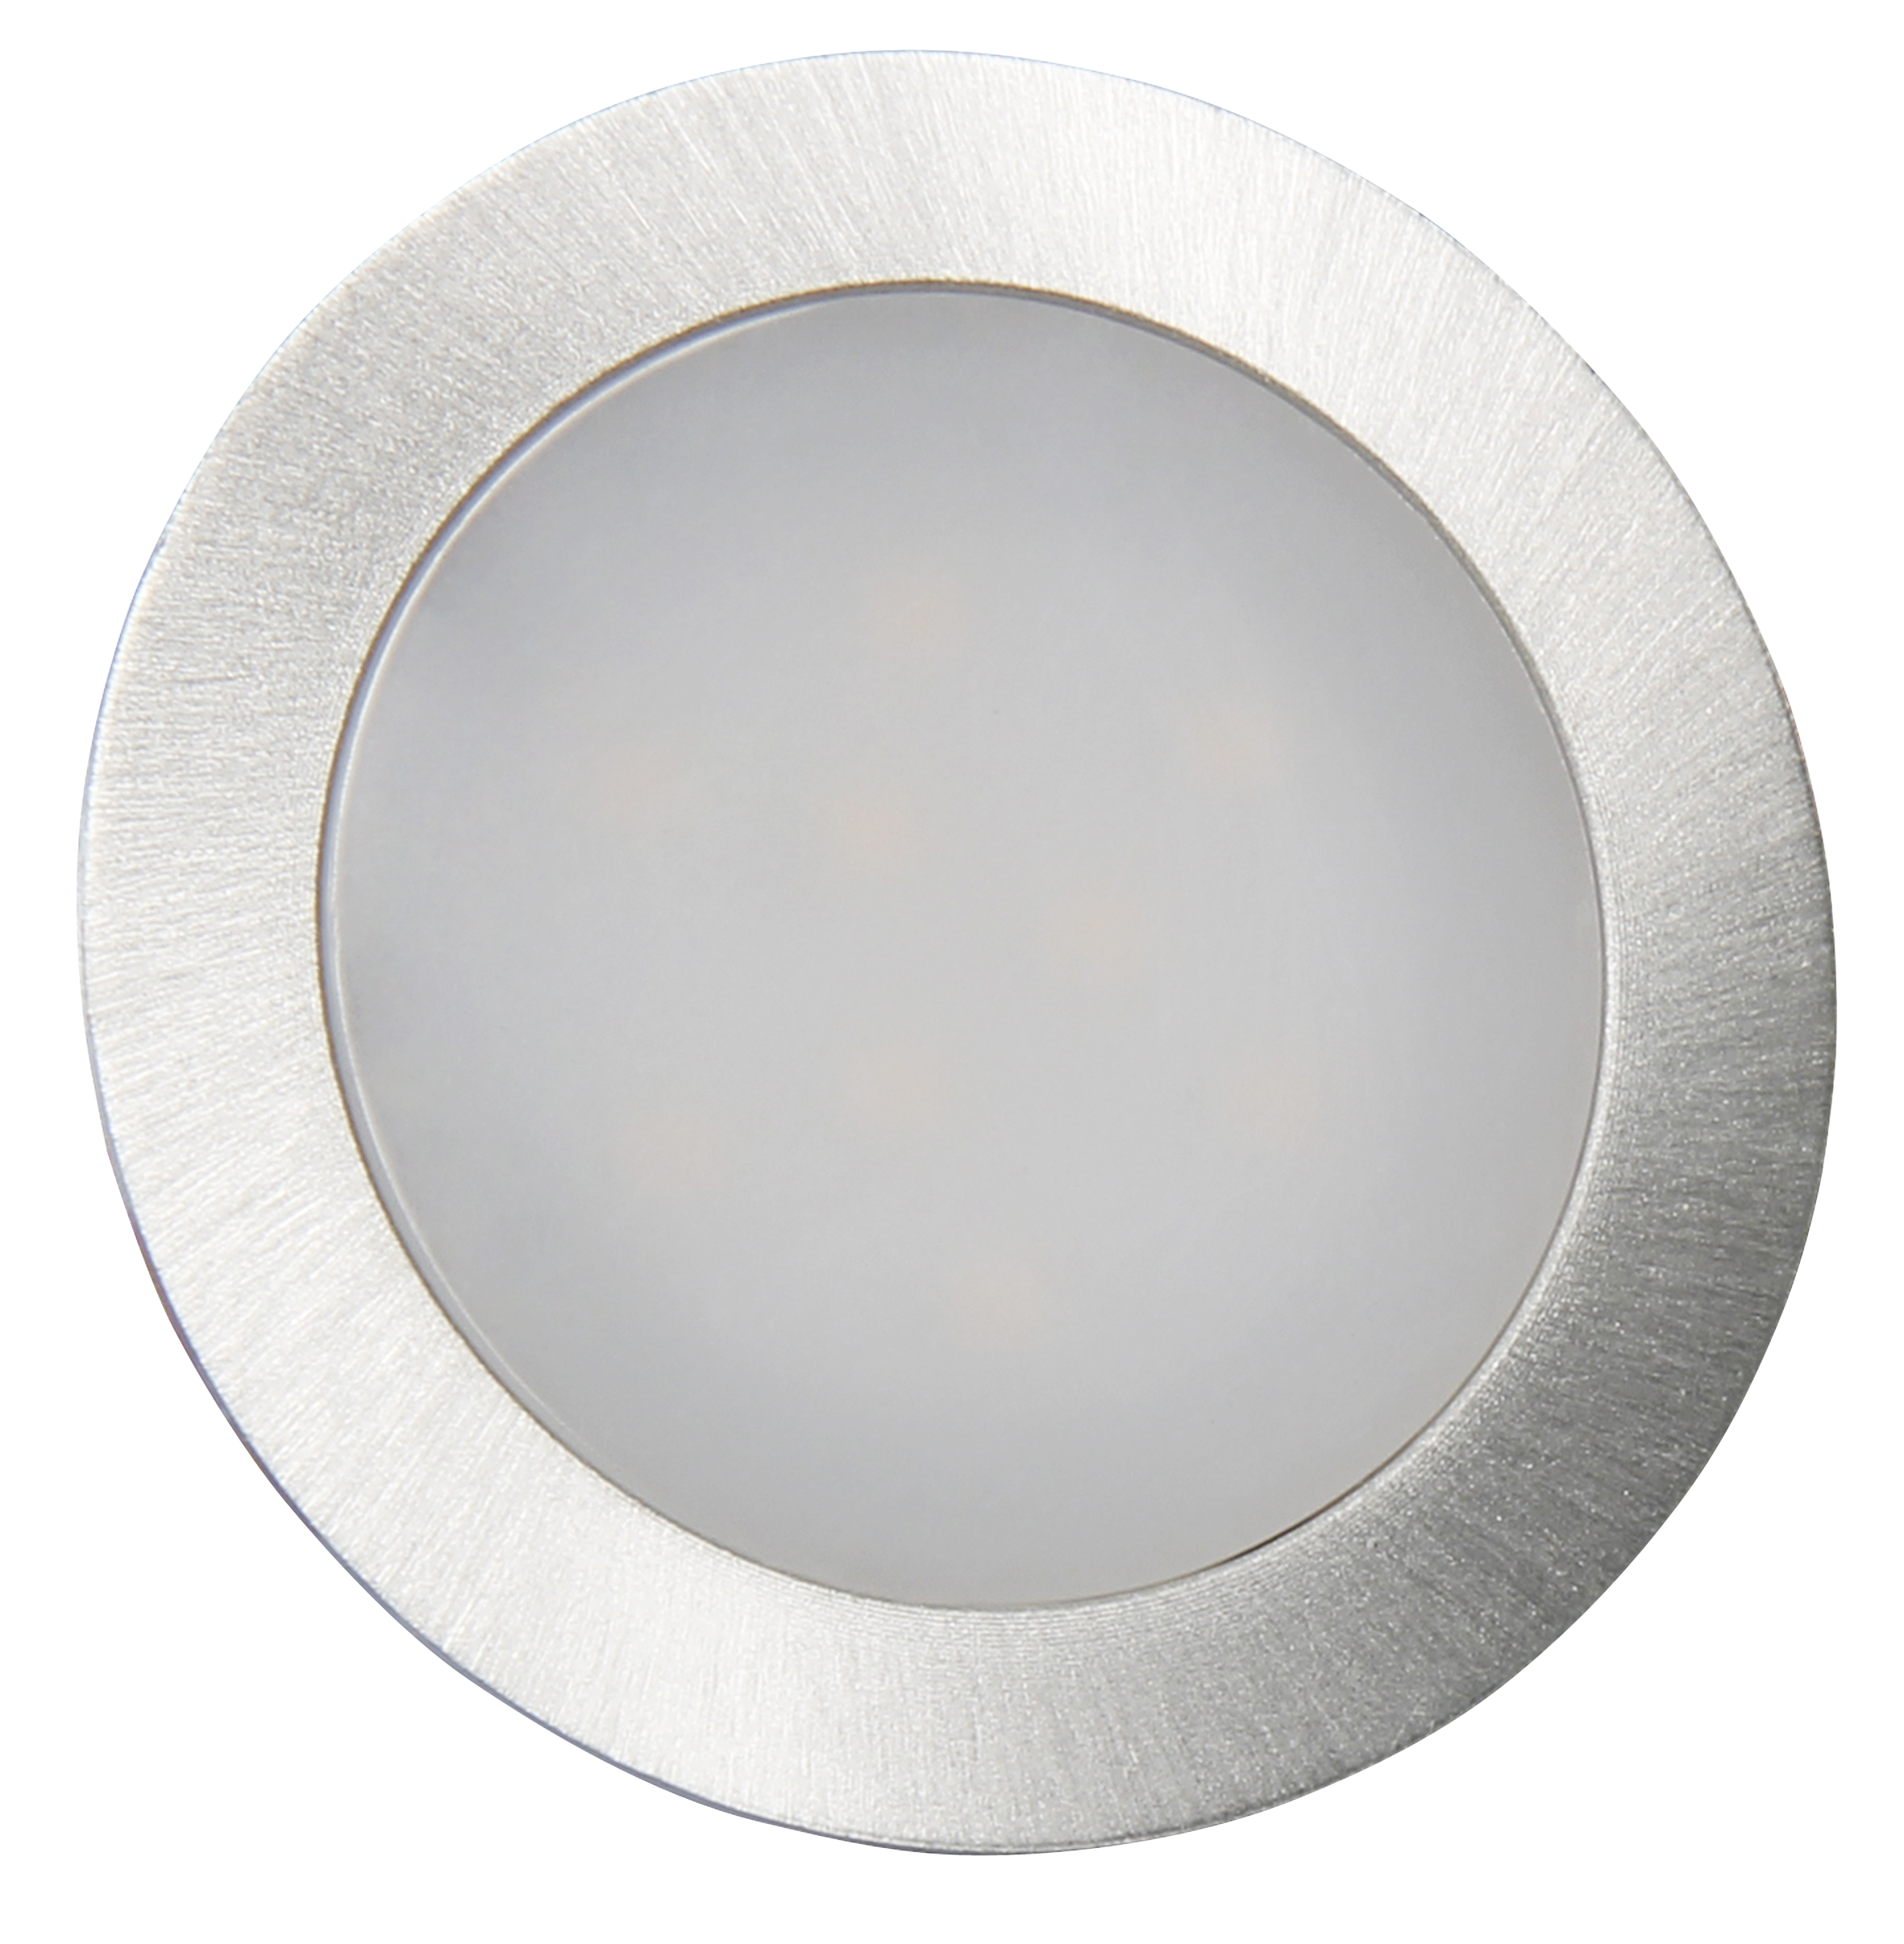 LED-Einbauleuchte McShine ''Fine'', 9 LEDs, warmweiß, 55mm-Ø, rund, Edelstahl, 60lm, 0.5W